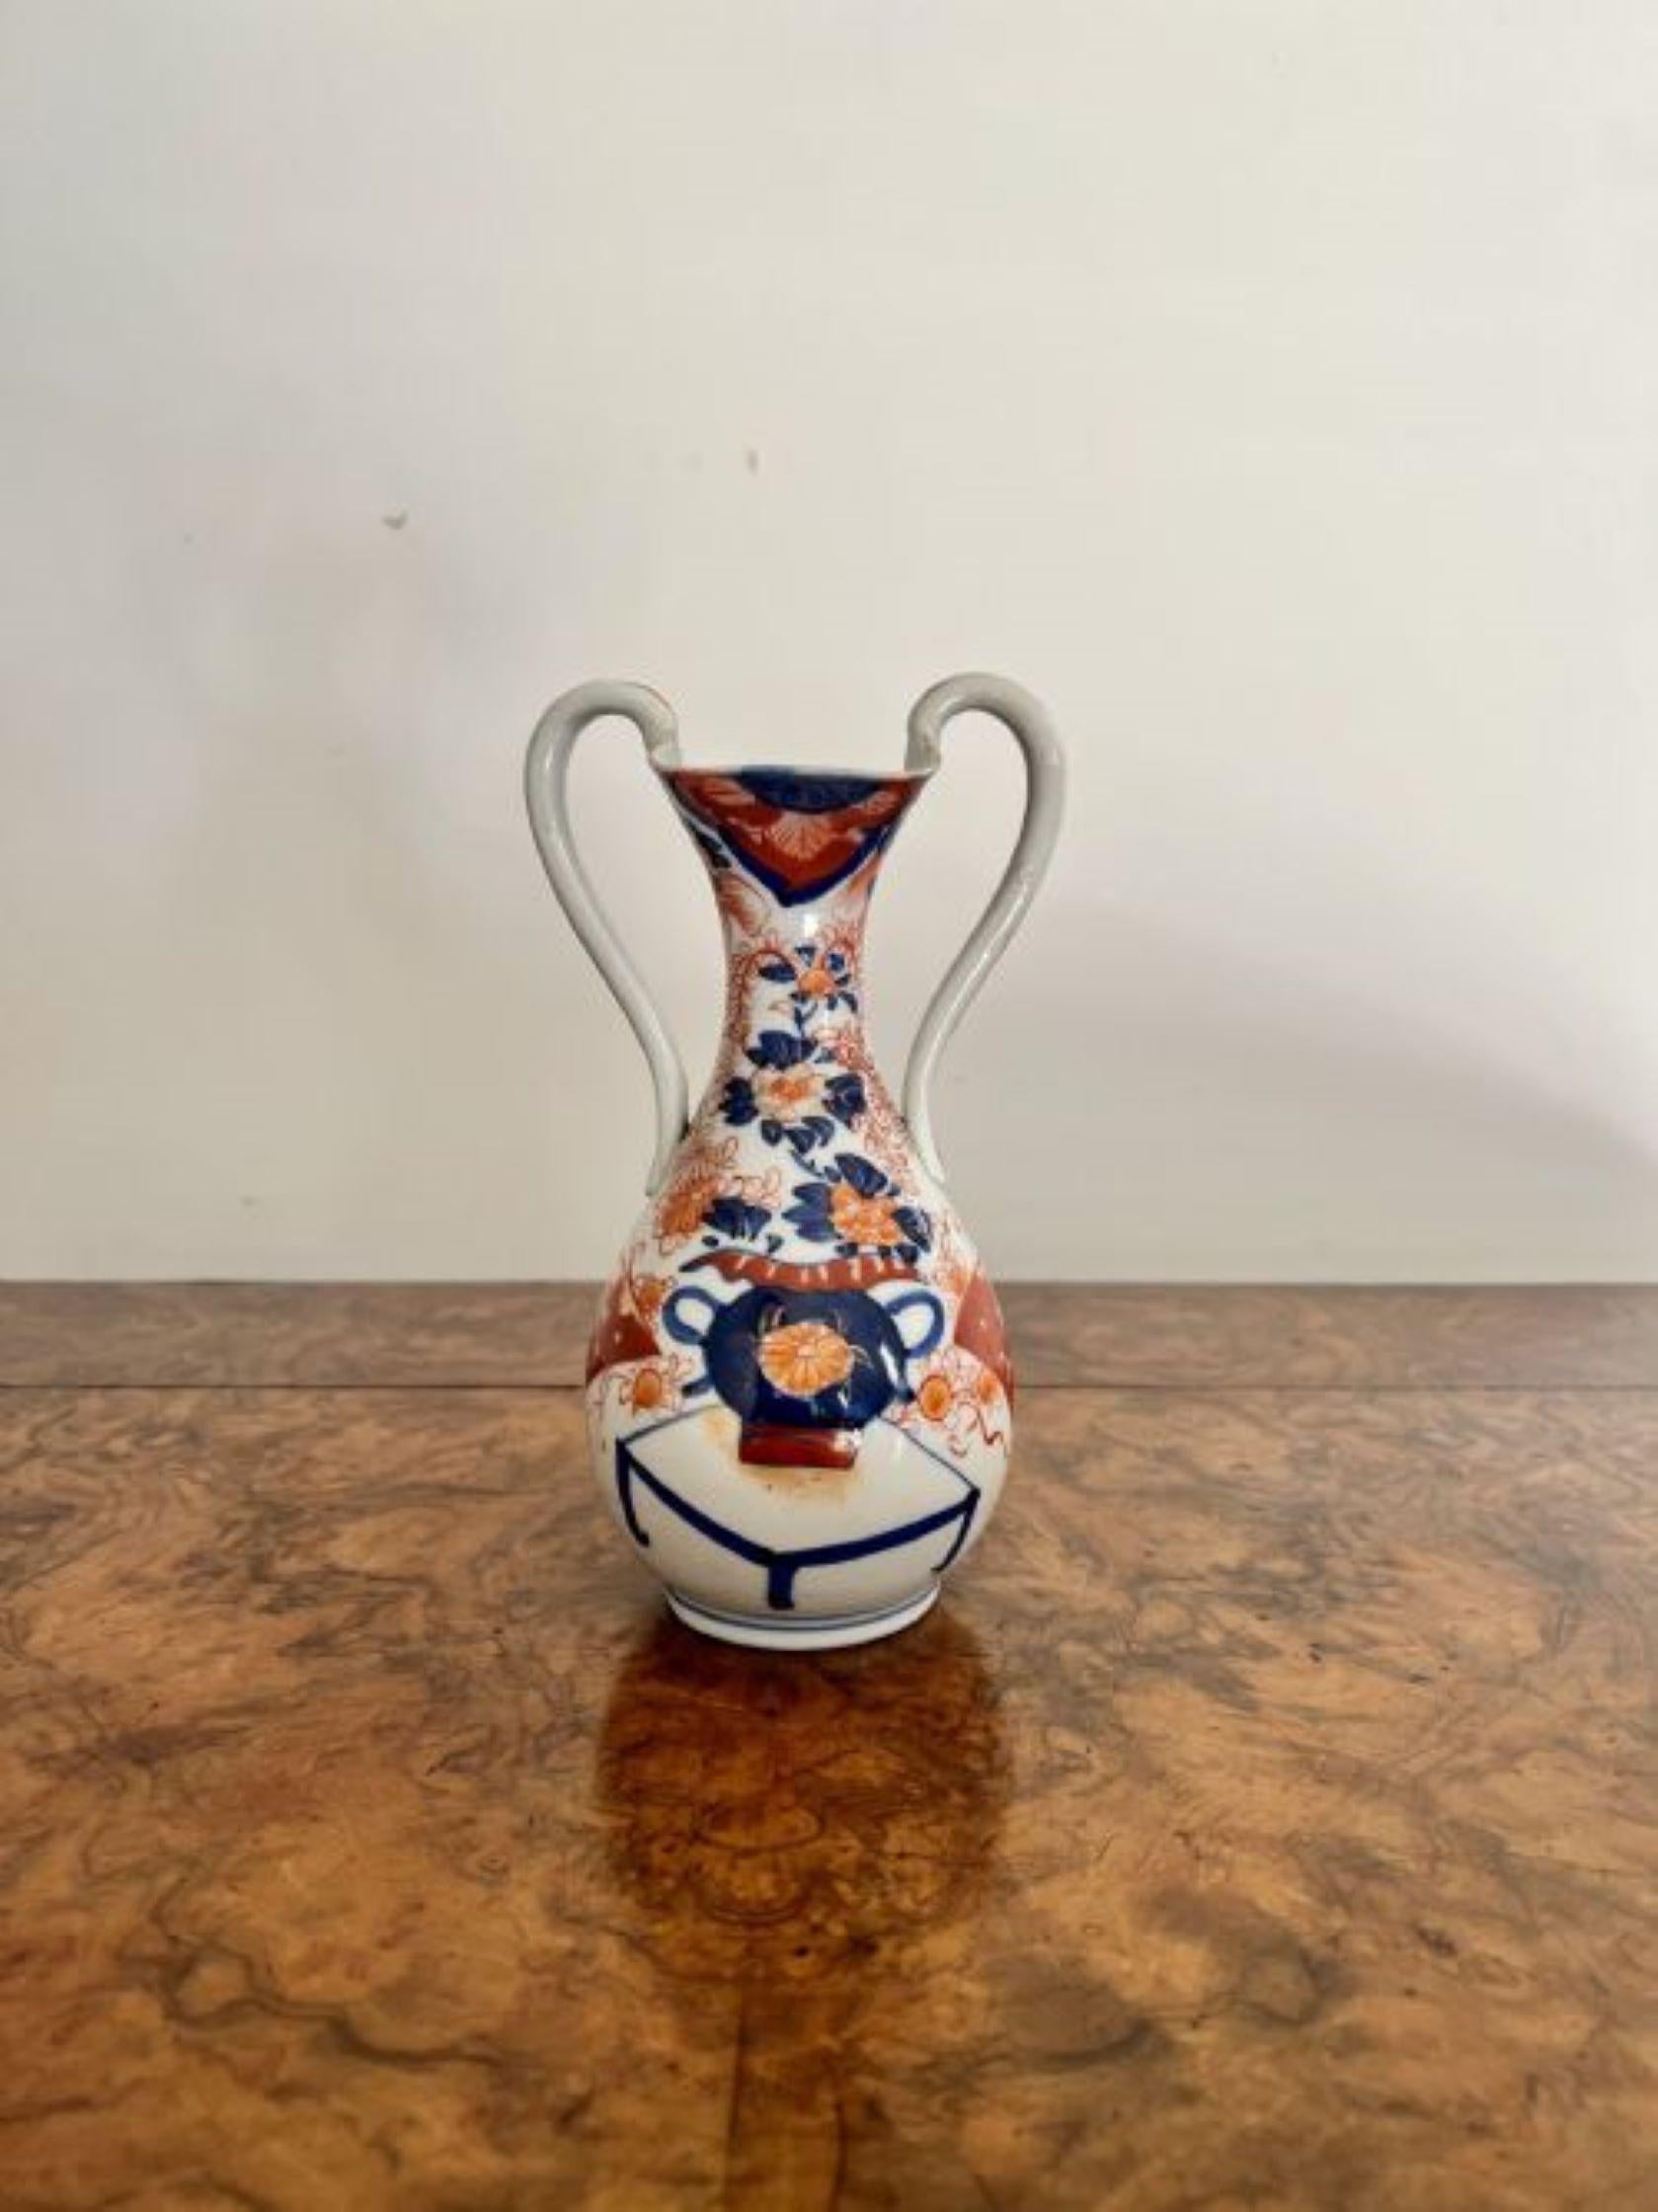 Inhabituel vase imari ancien de qualité japonaise, doté de deux anses latérales, d'un corps de forme agréable et d'un col cannelé, avec de magnifiques panneaux peints à la main en rouge, bleu, orange et blanc.